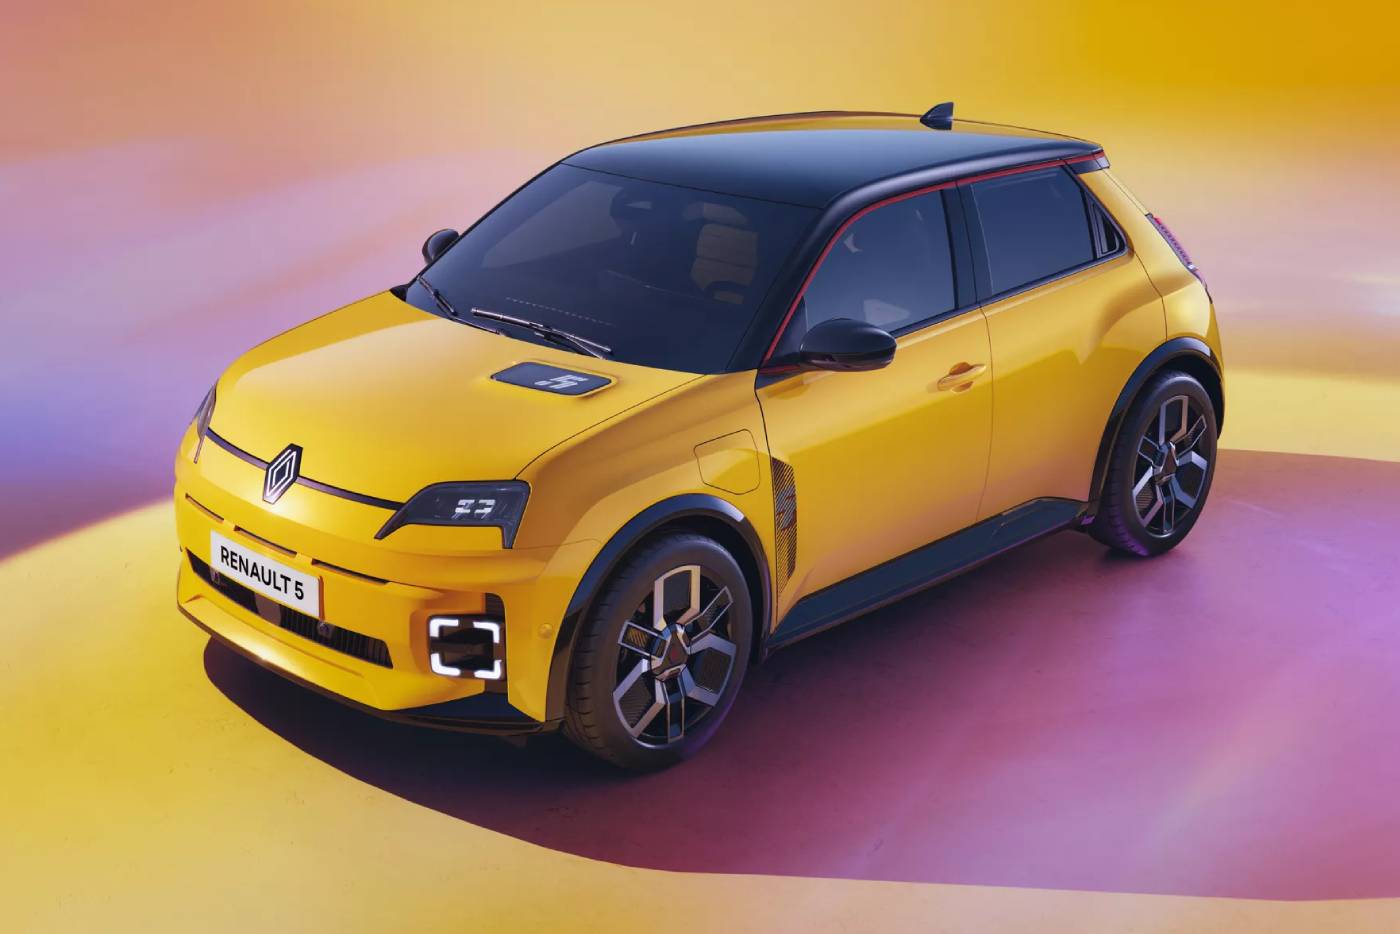 Το νέο Renault 5 ξεκινά επανάσταση!